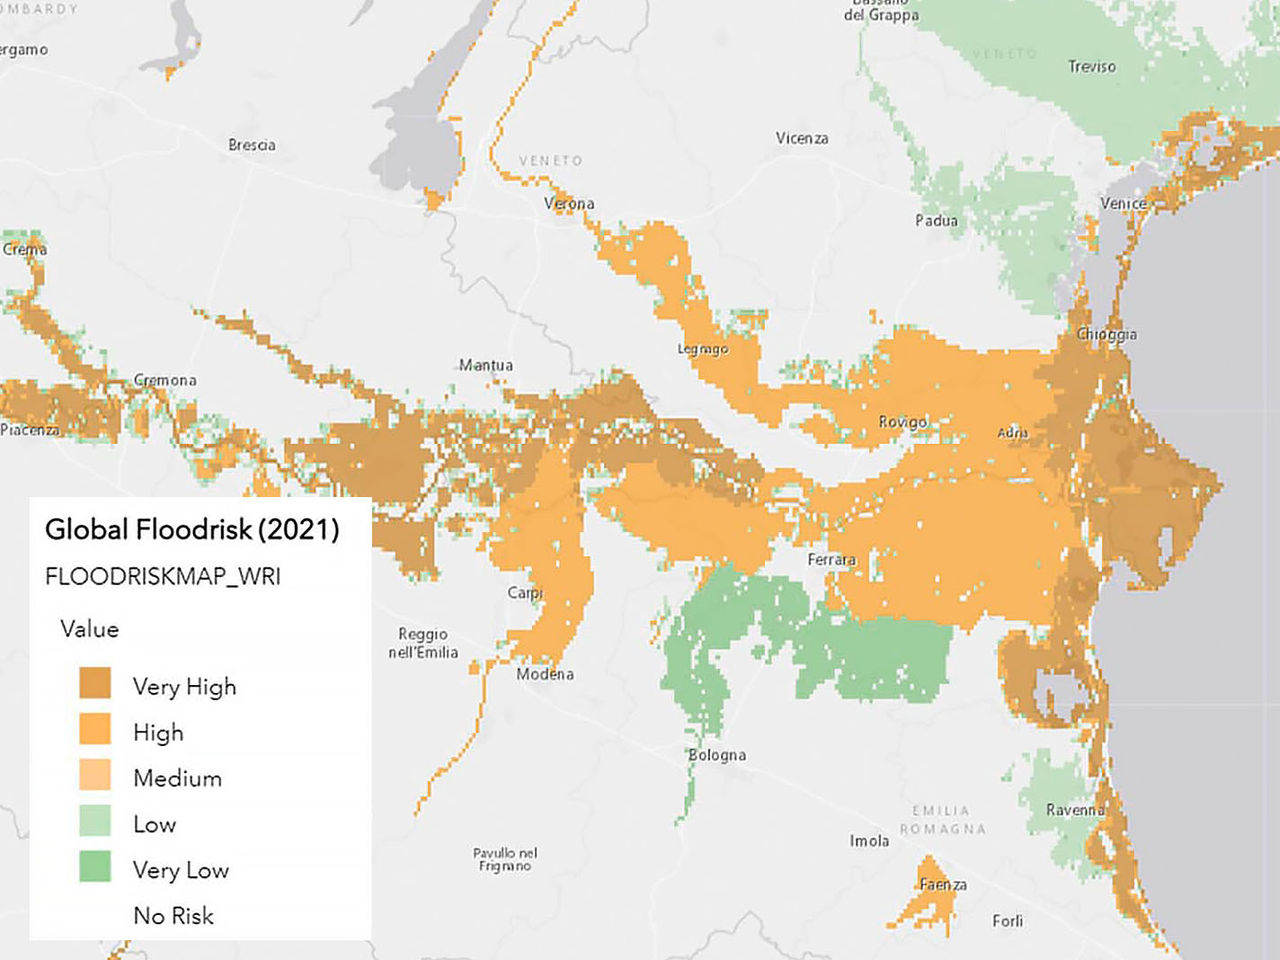 Mapa de riesgos de inundación codificado por colores, parte de una evaluación de riesgos climáticos